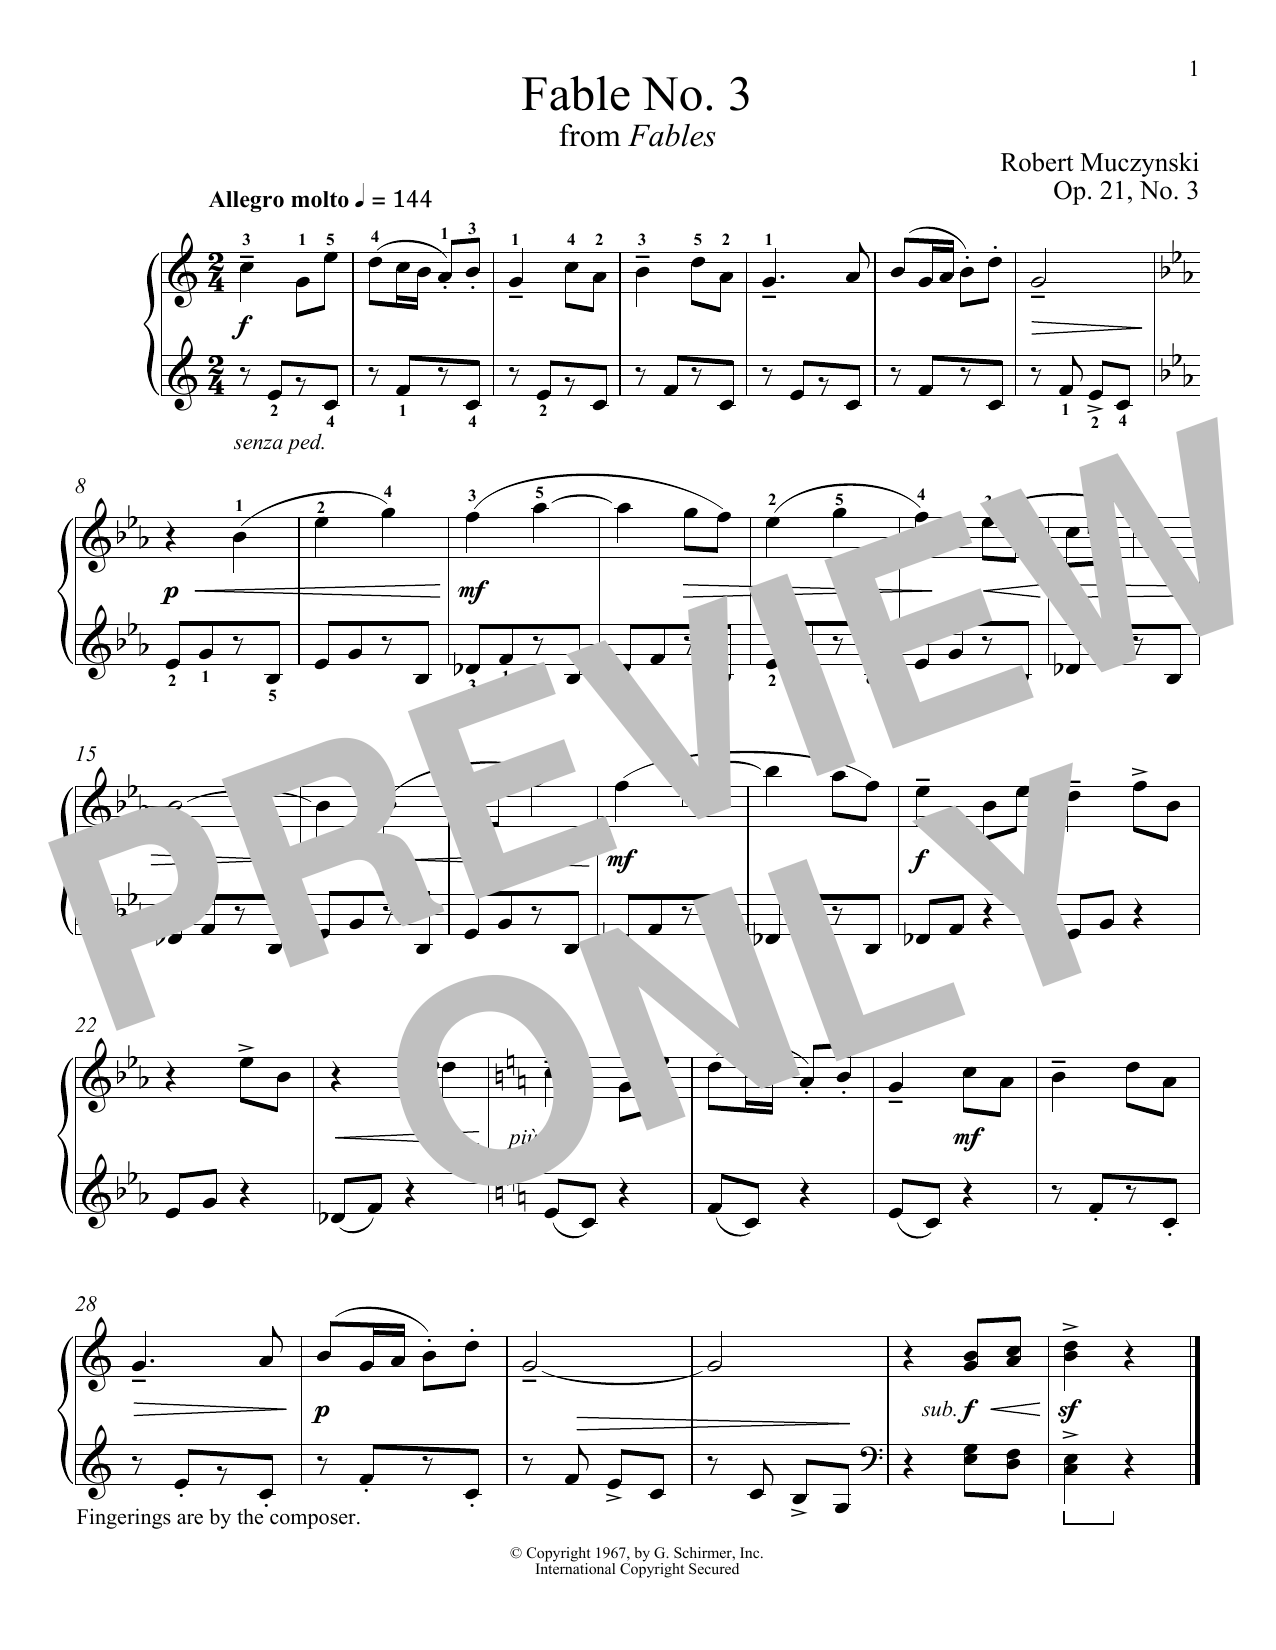 Download Robert Muczynski Fable No. 3, Op. 21 Sheet Music